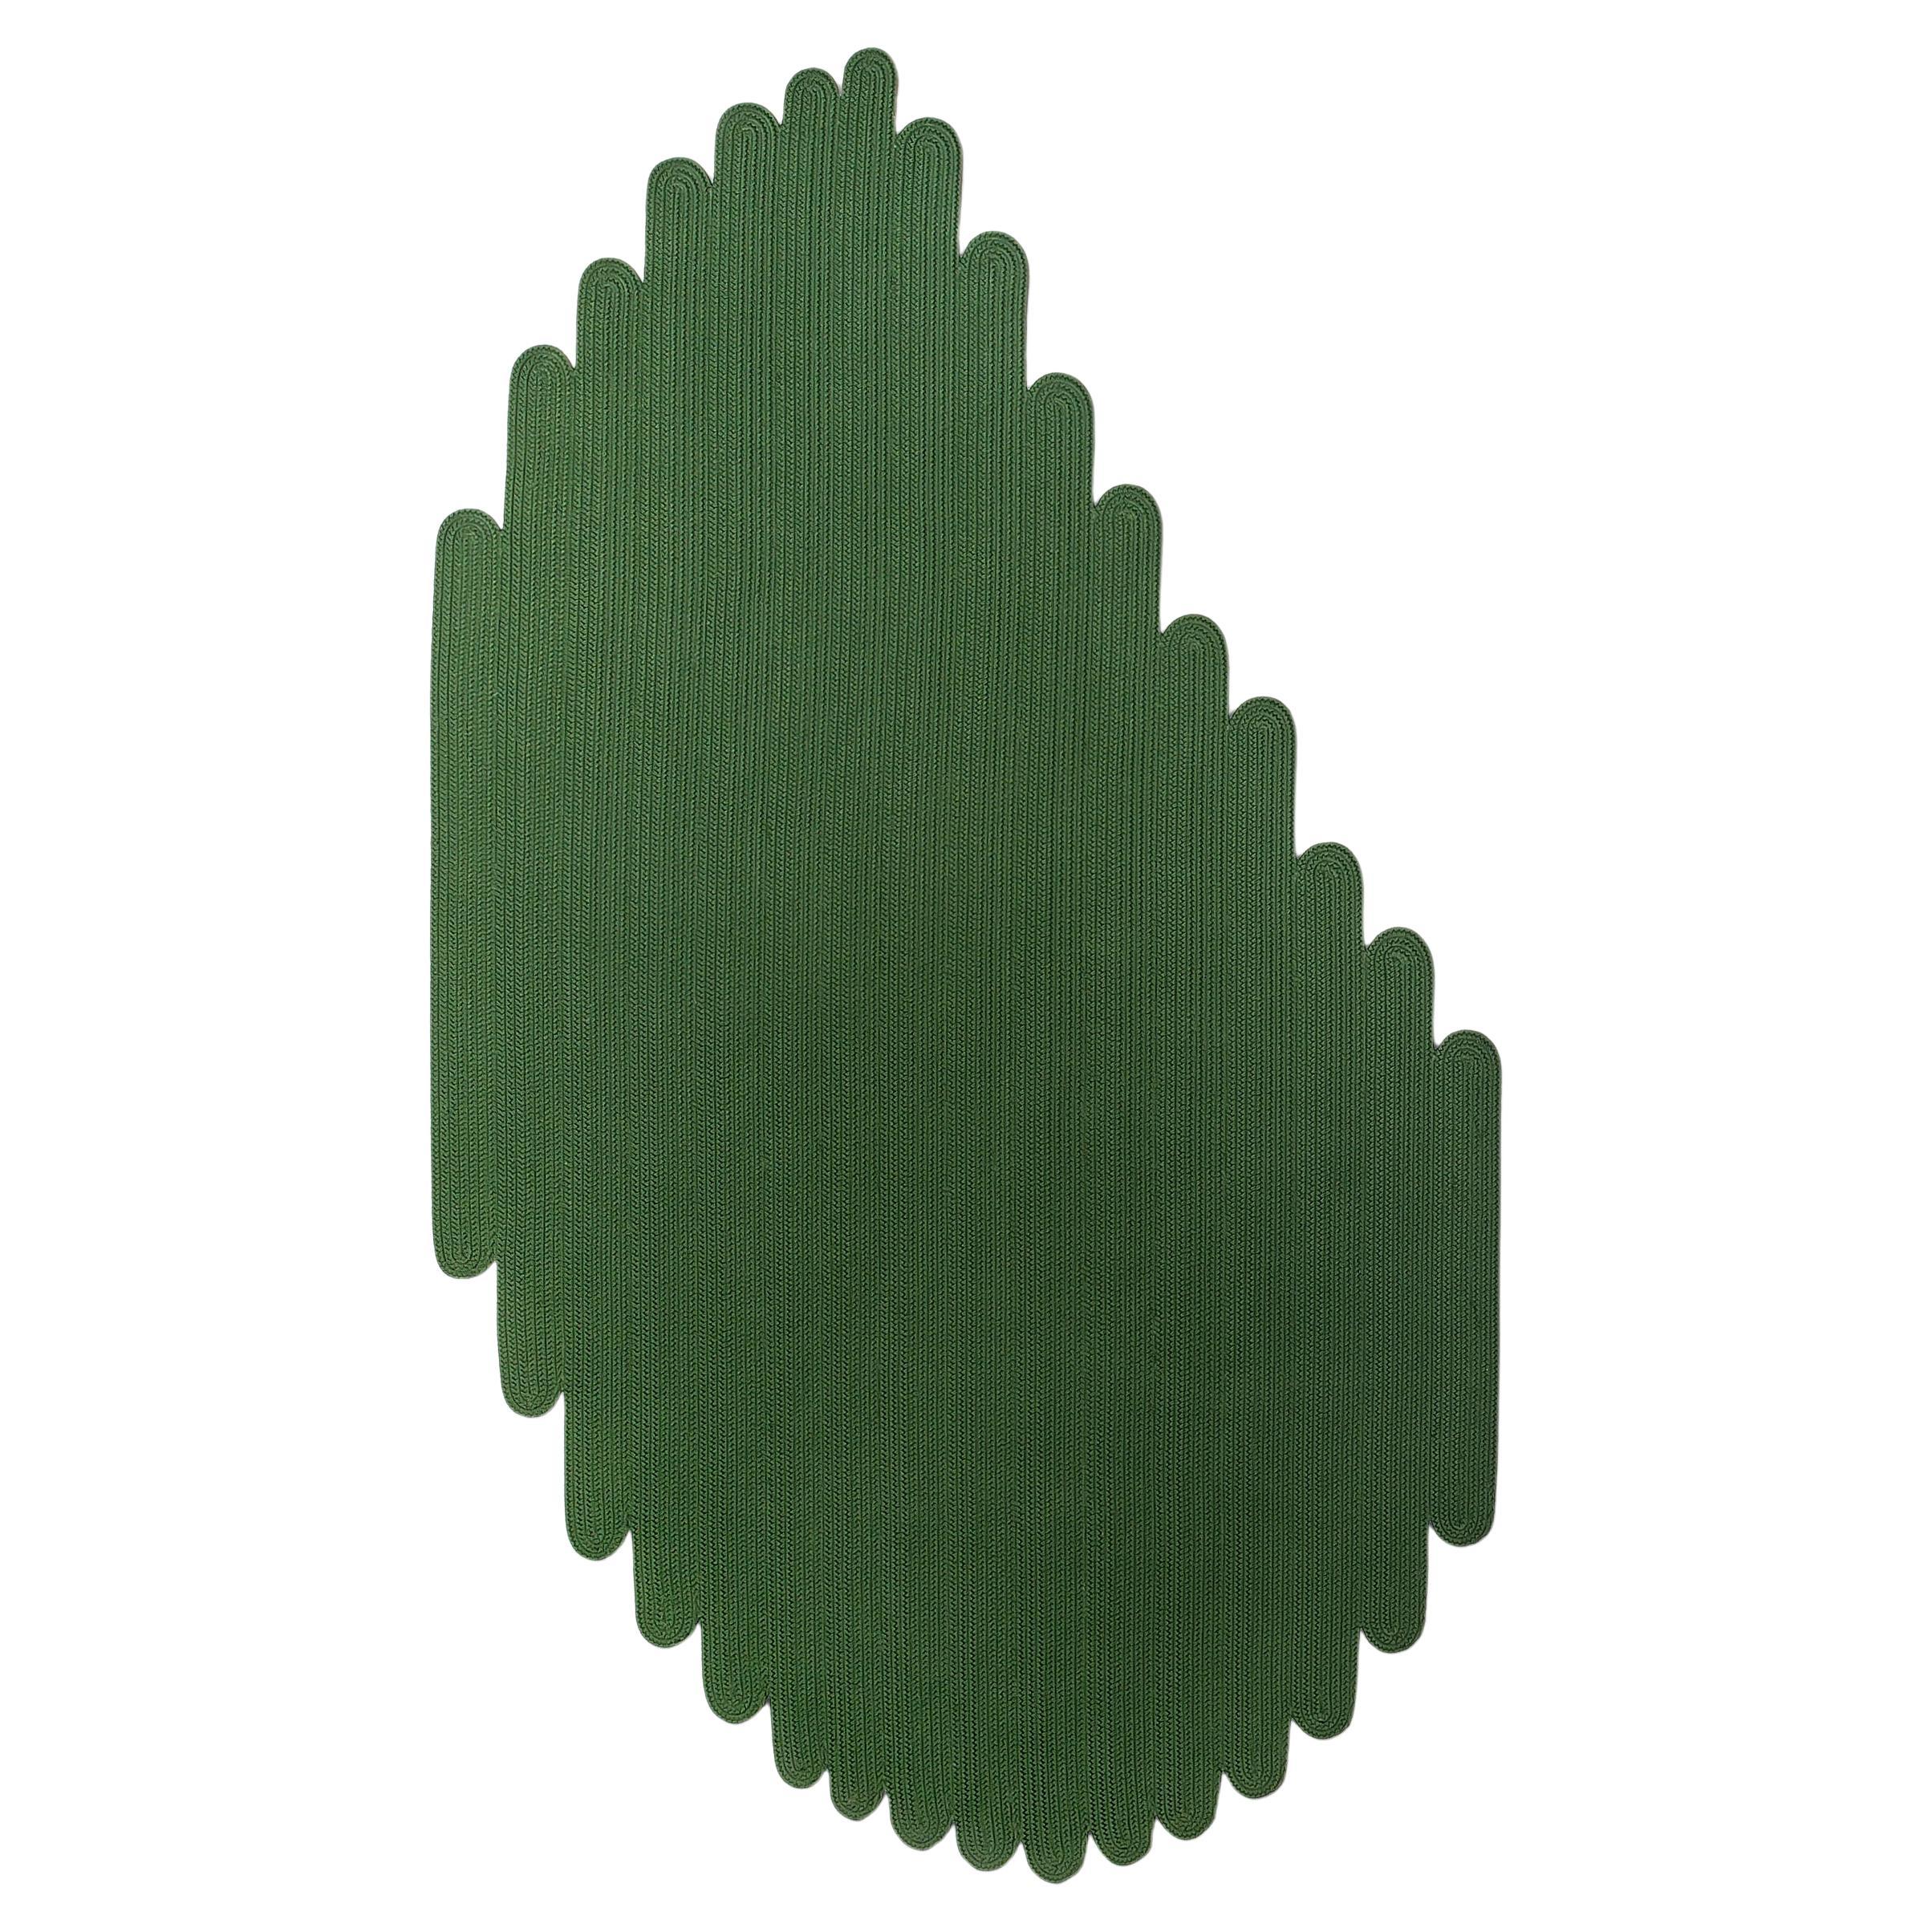 Tappeto forma foglia outdoor verde Design italiano von Deanna Comellini 144x250cm